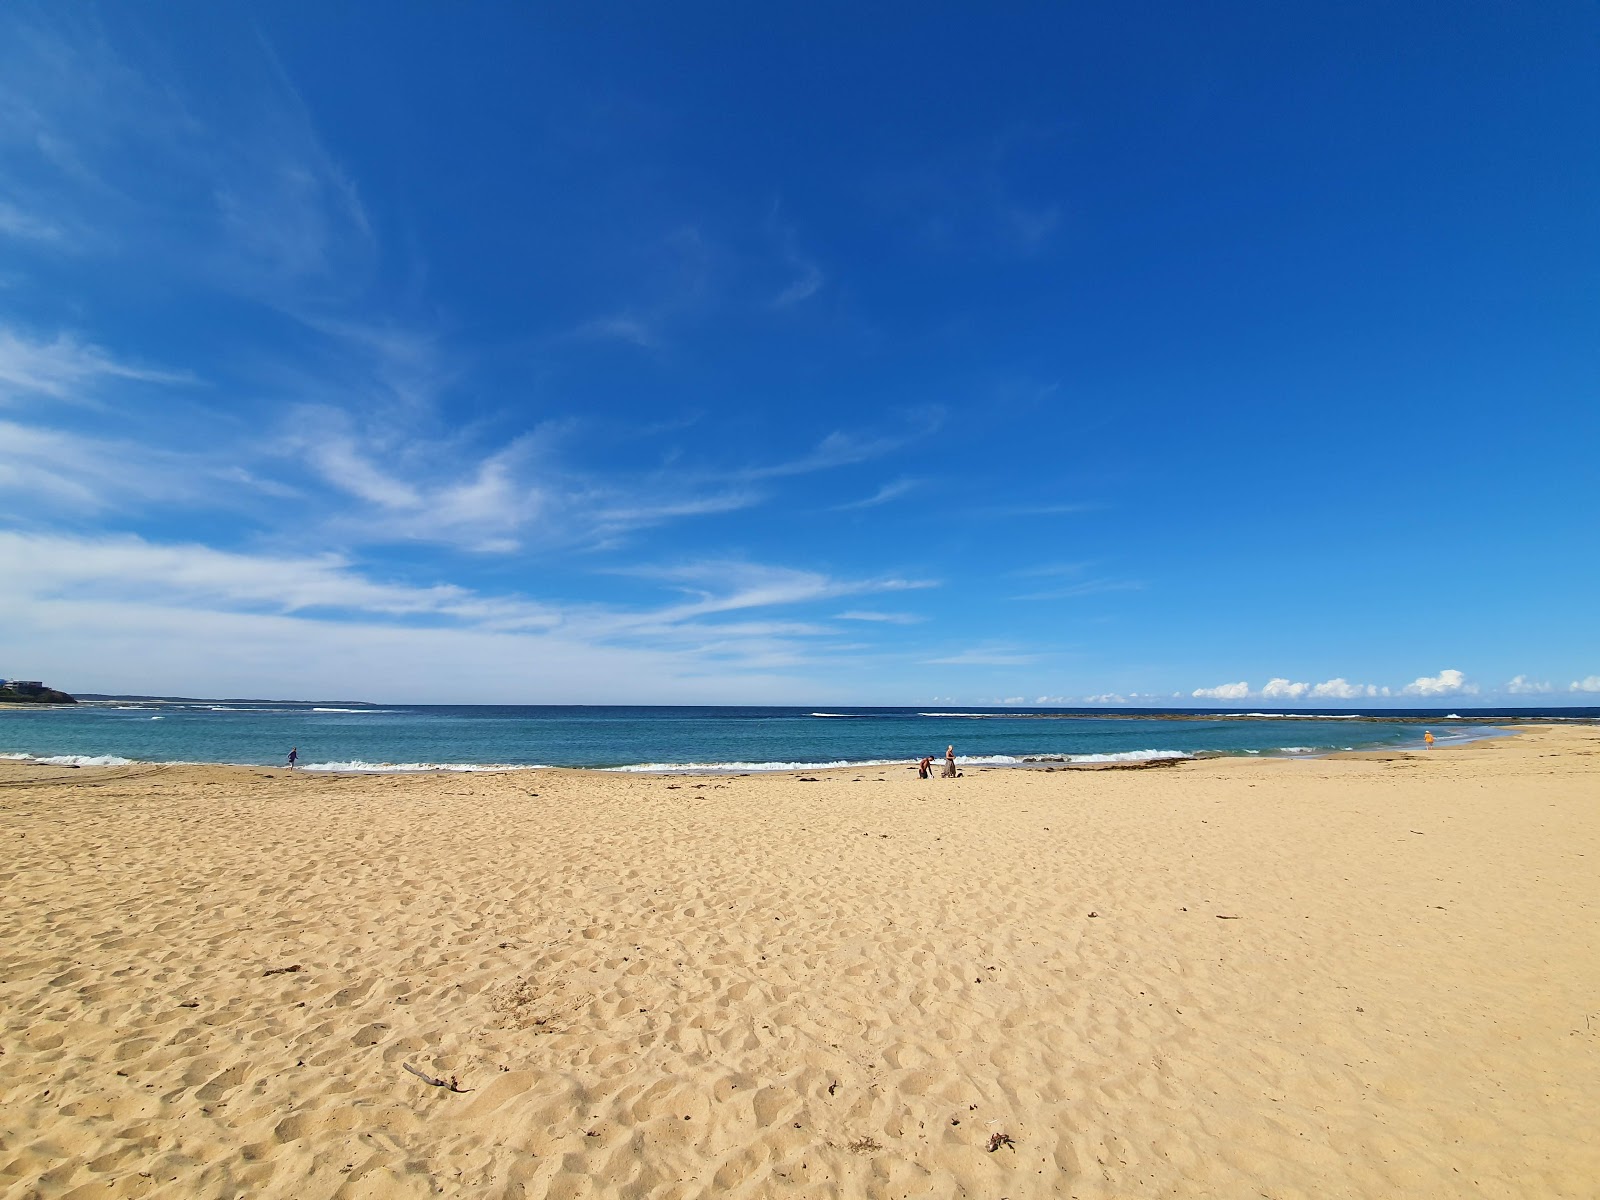 Fotografie cu Toowoon Bay Beach - locul popular printre cunoscătorii de relaxare